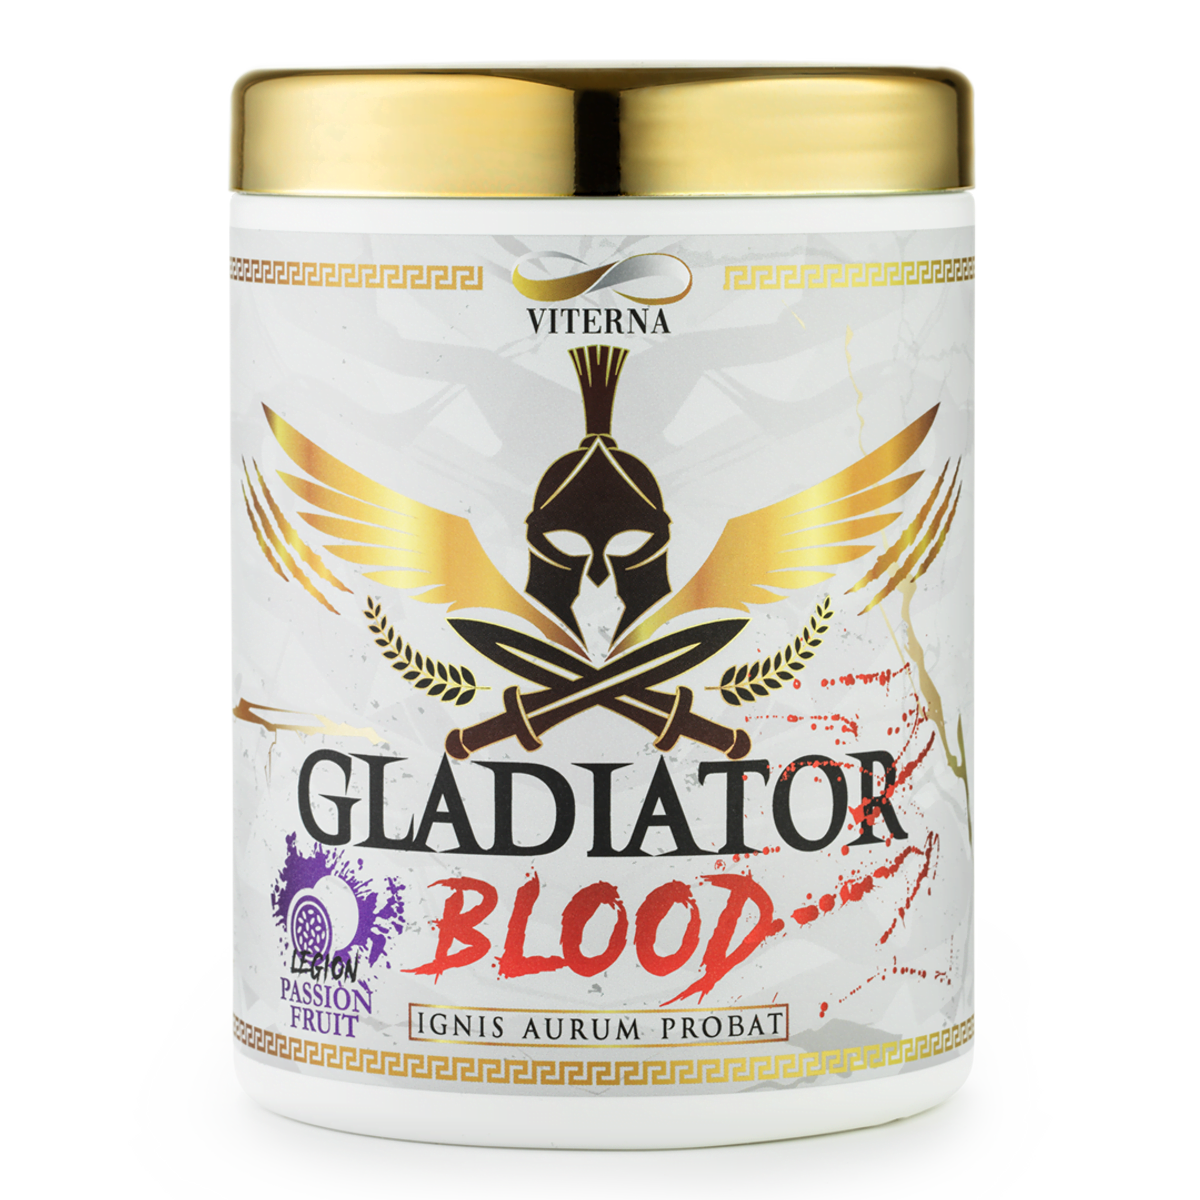 Gladiator Blood 460g - Viterna